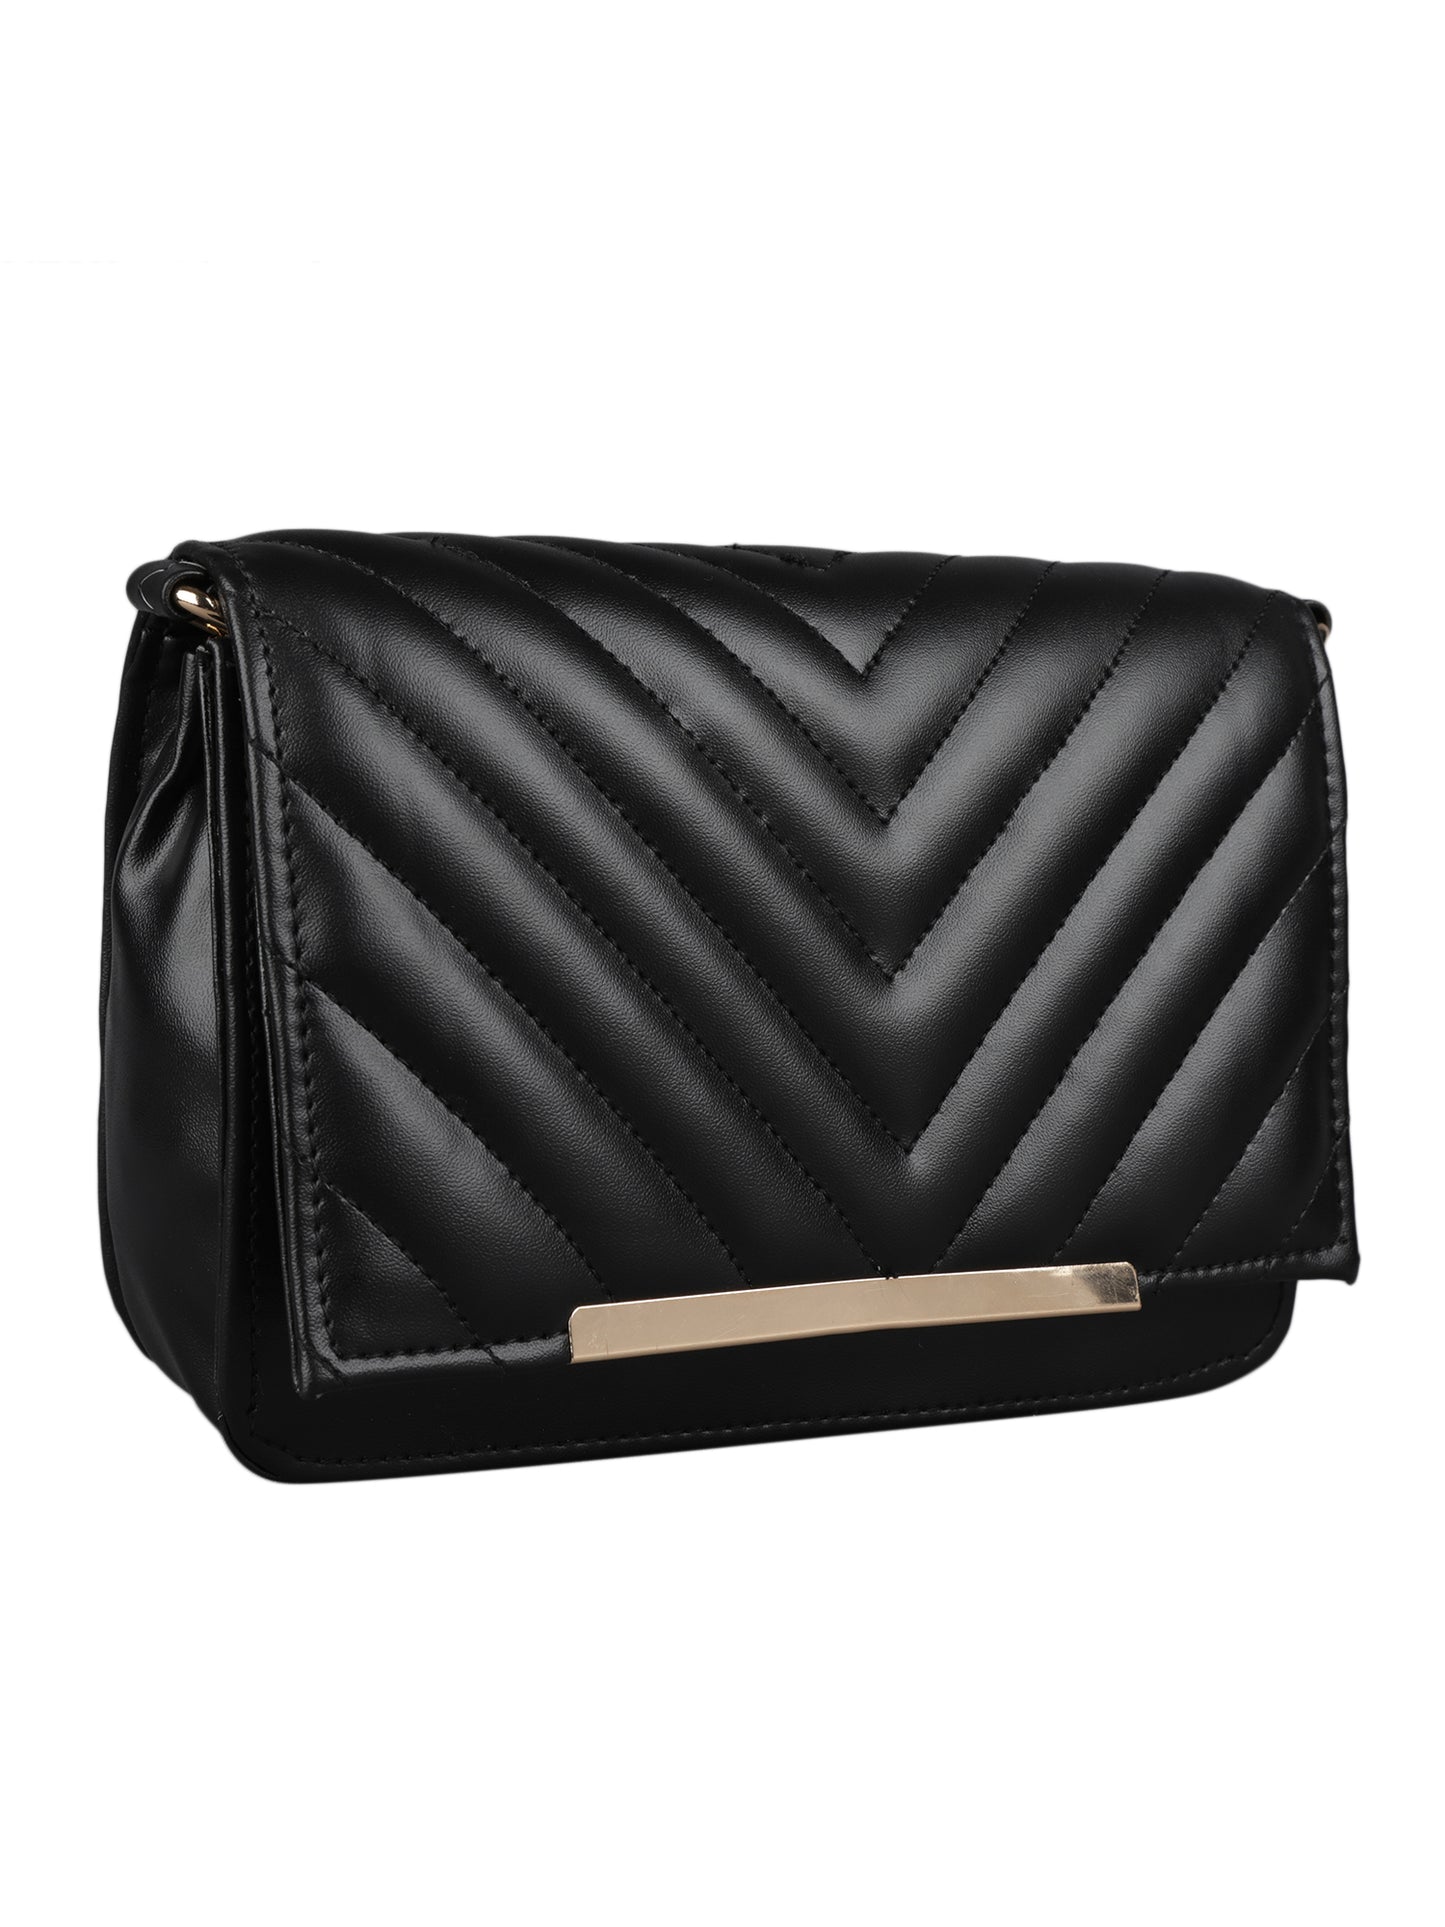 MINI WESST Women's Black Handbags(MWHB024BL)